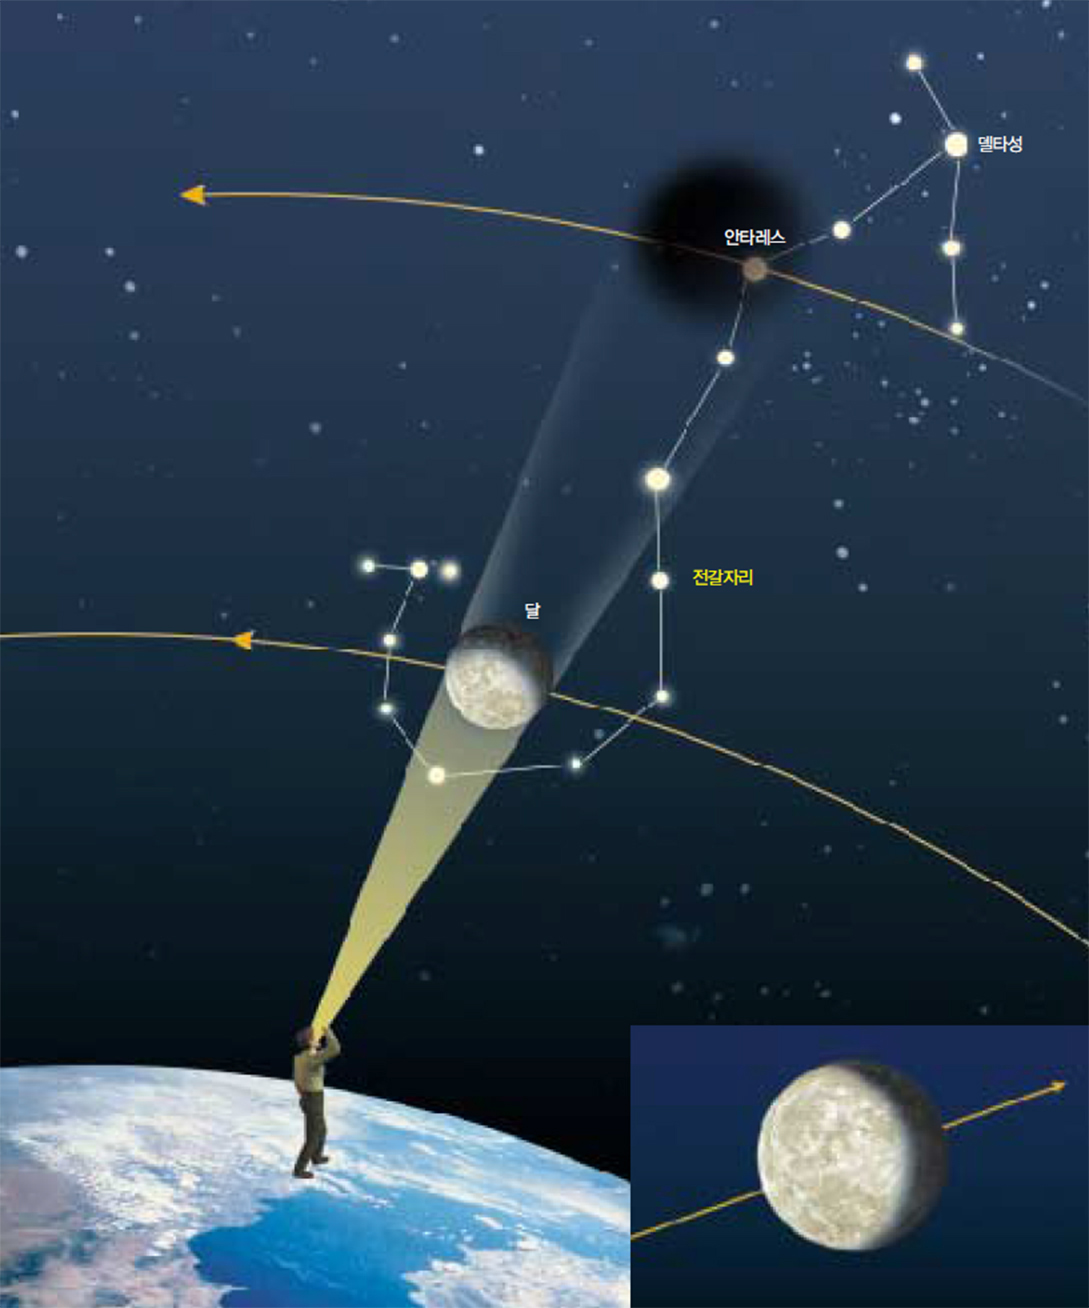 성식이란 관측자가 볼 때 달이 가려져 벼링 보이지 않게 되는 현상이다. 31일 새벽에 있는 안타레스성식은 전가자리의 1등성 안타레스가 천구에 투영된 달 속에 들어있을 때 일어난다(큰 그림). 달과 별은 동쪽으로 이동하지만 달이 더 빨리 움직이므로 달의 위치를 고정하면 별이 서쪽방향으로 이동하는 것처럼 보인다. 이번 성식에서 안타레스의 이동궤적(작은 그림).